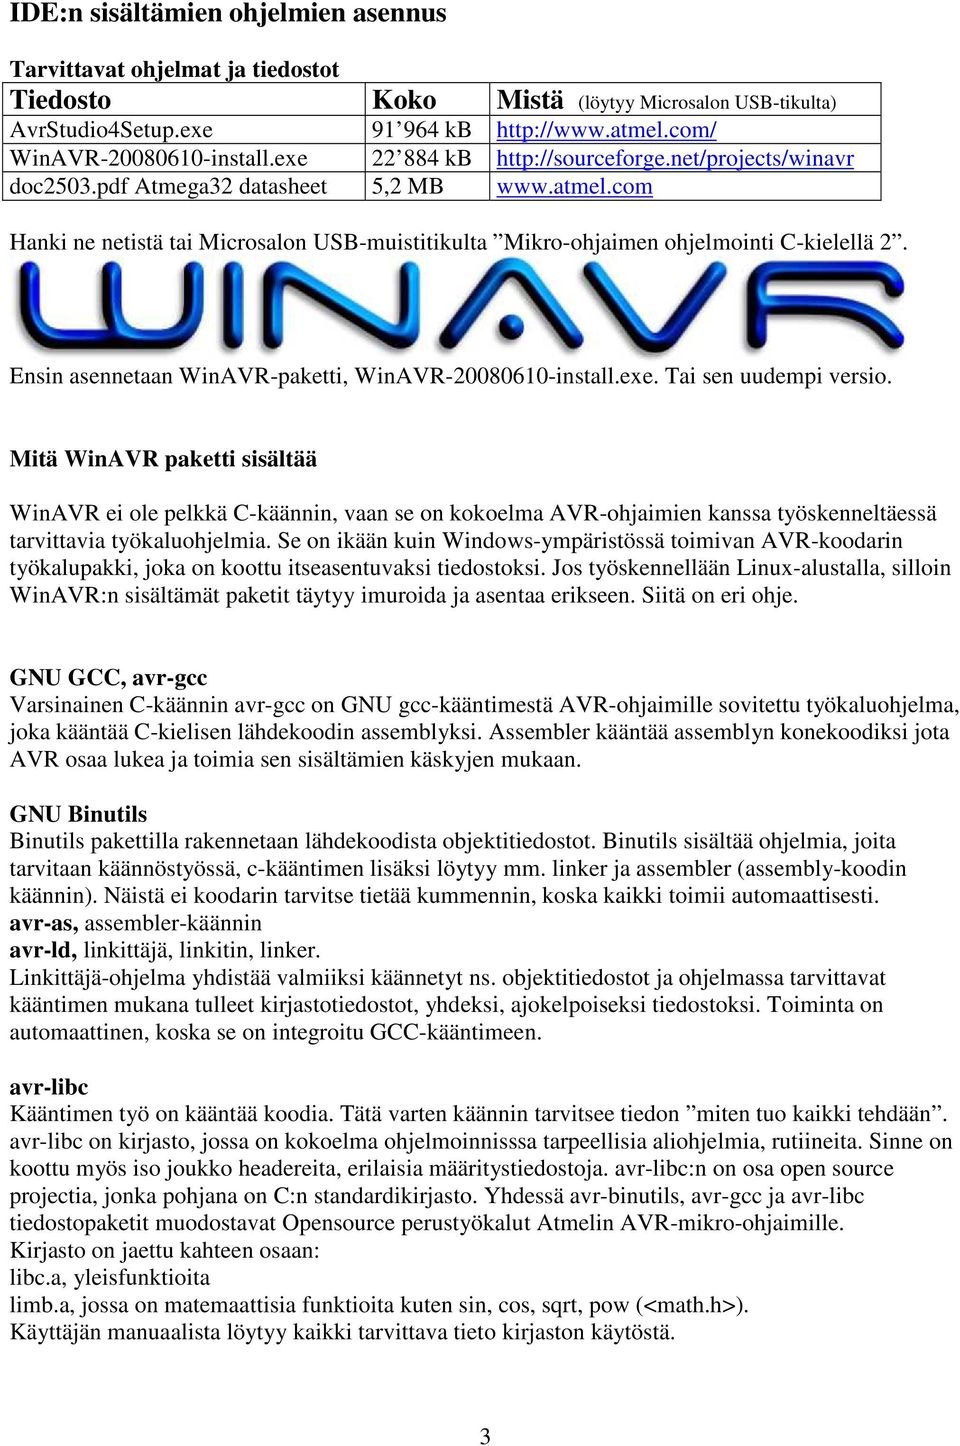 Ensin asennetaan WinAVR-paketti, WinAVR-20080610-install.exe. Tai sen uudempi versio.